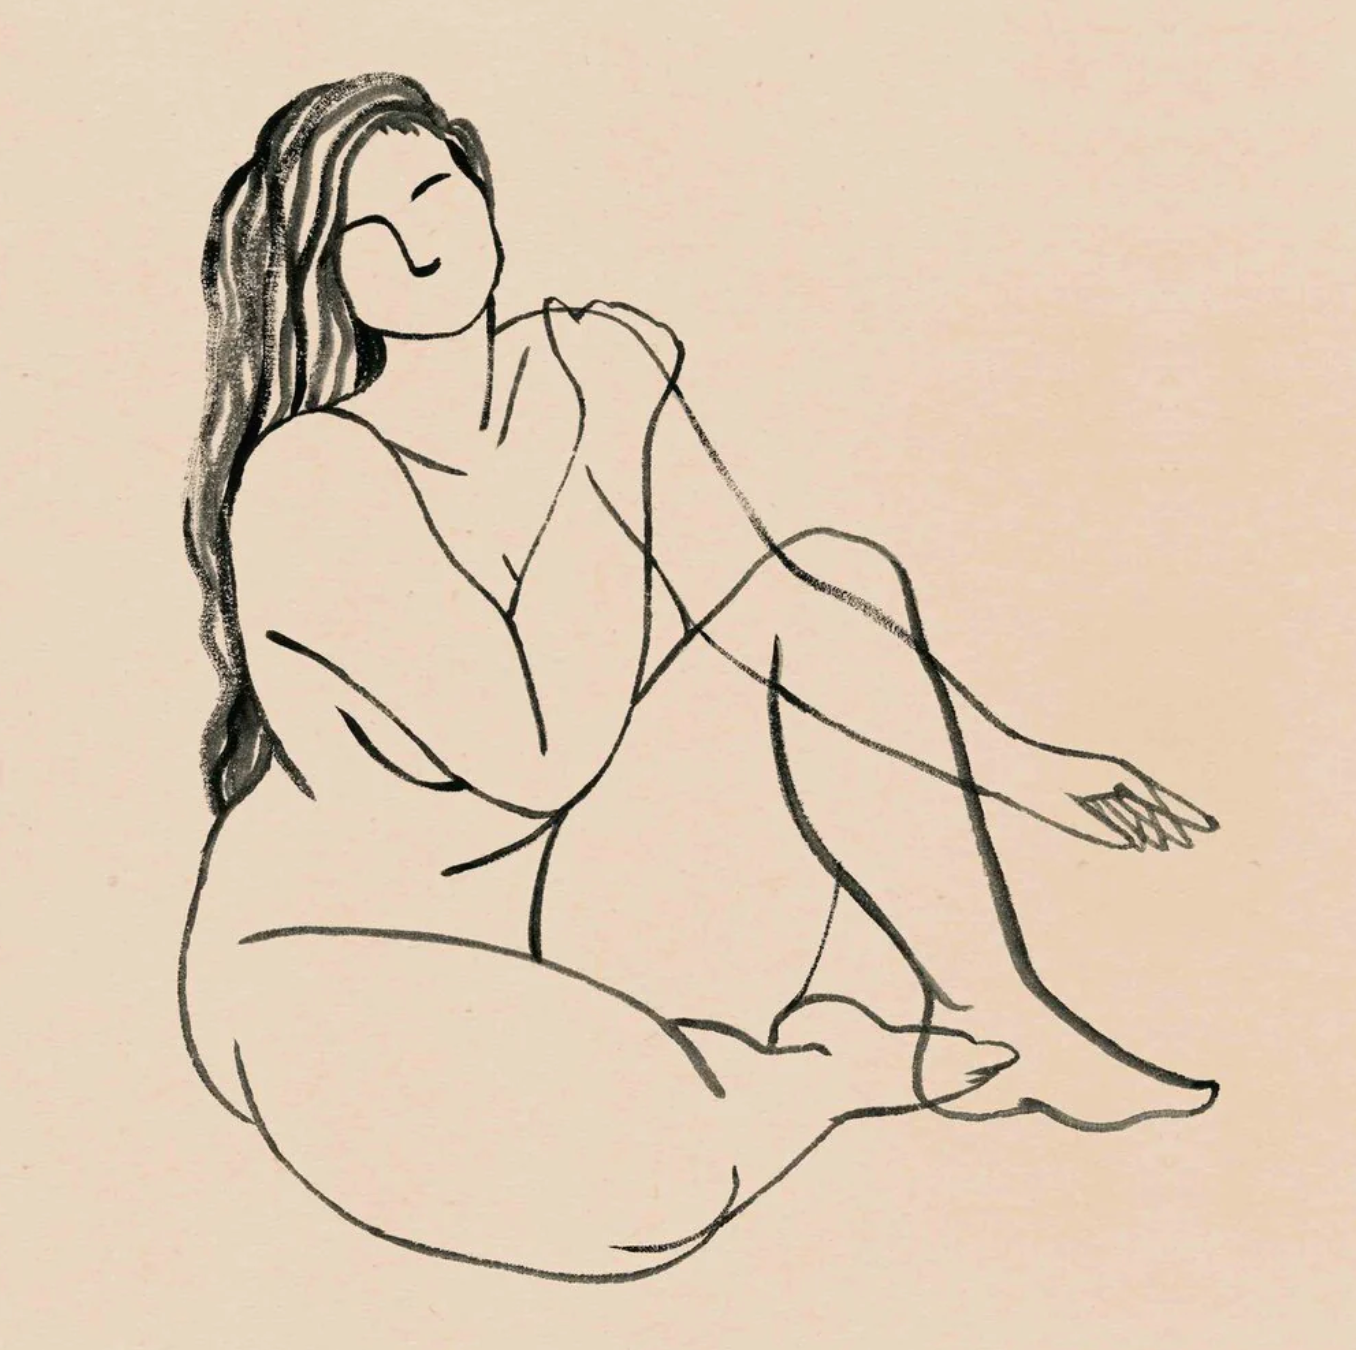 plus-sized woman figure drawing from Grace Popp art